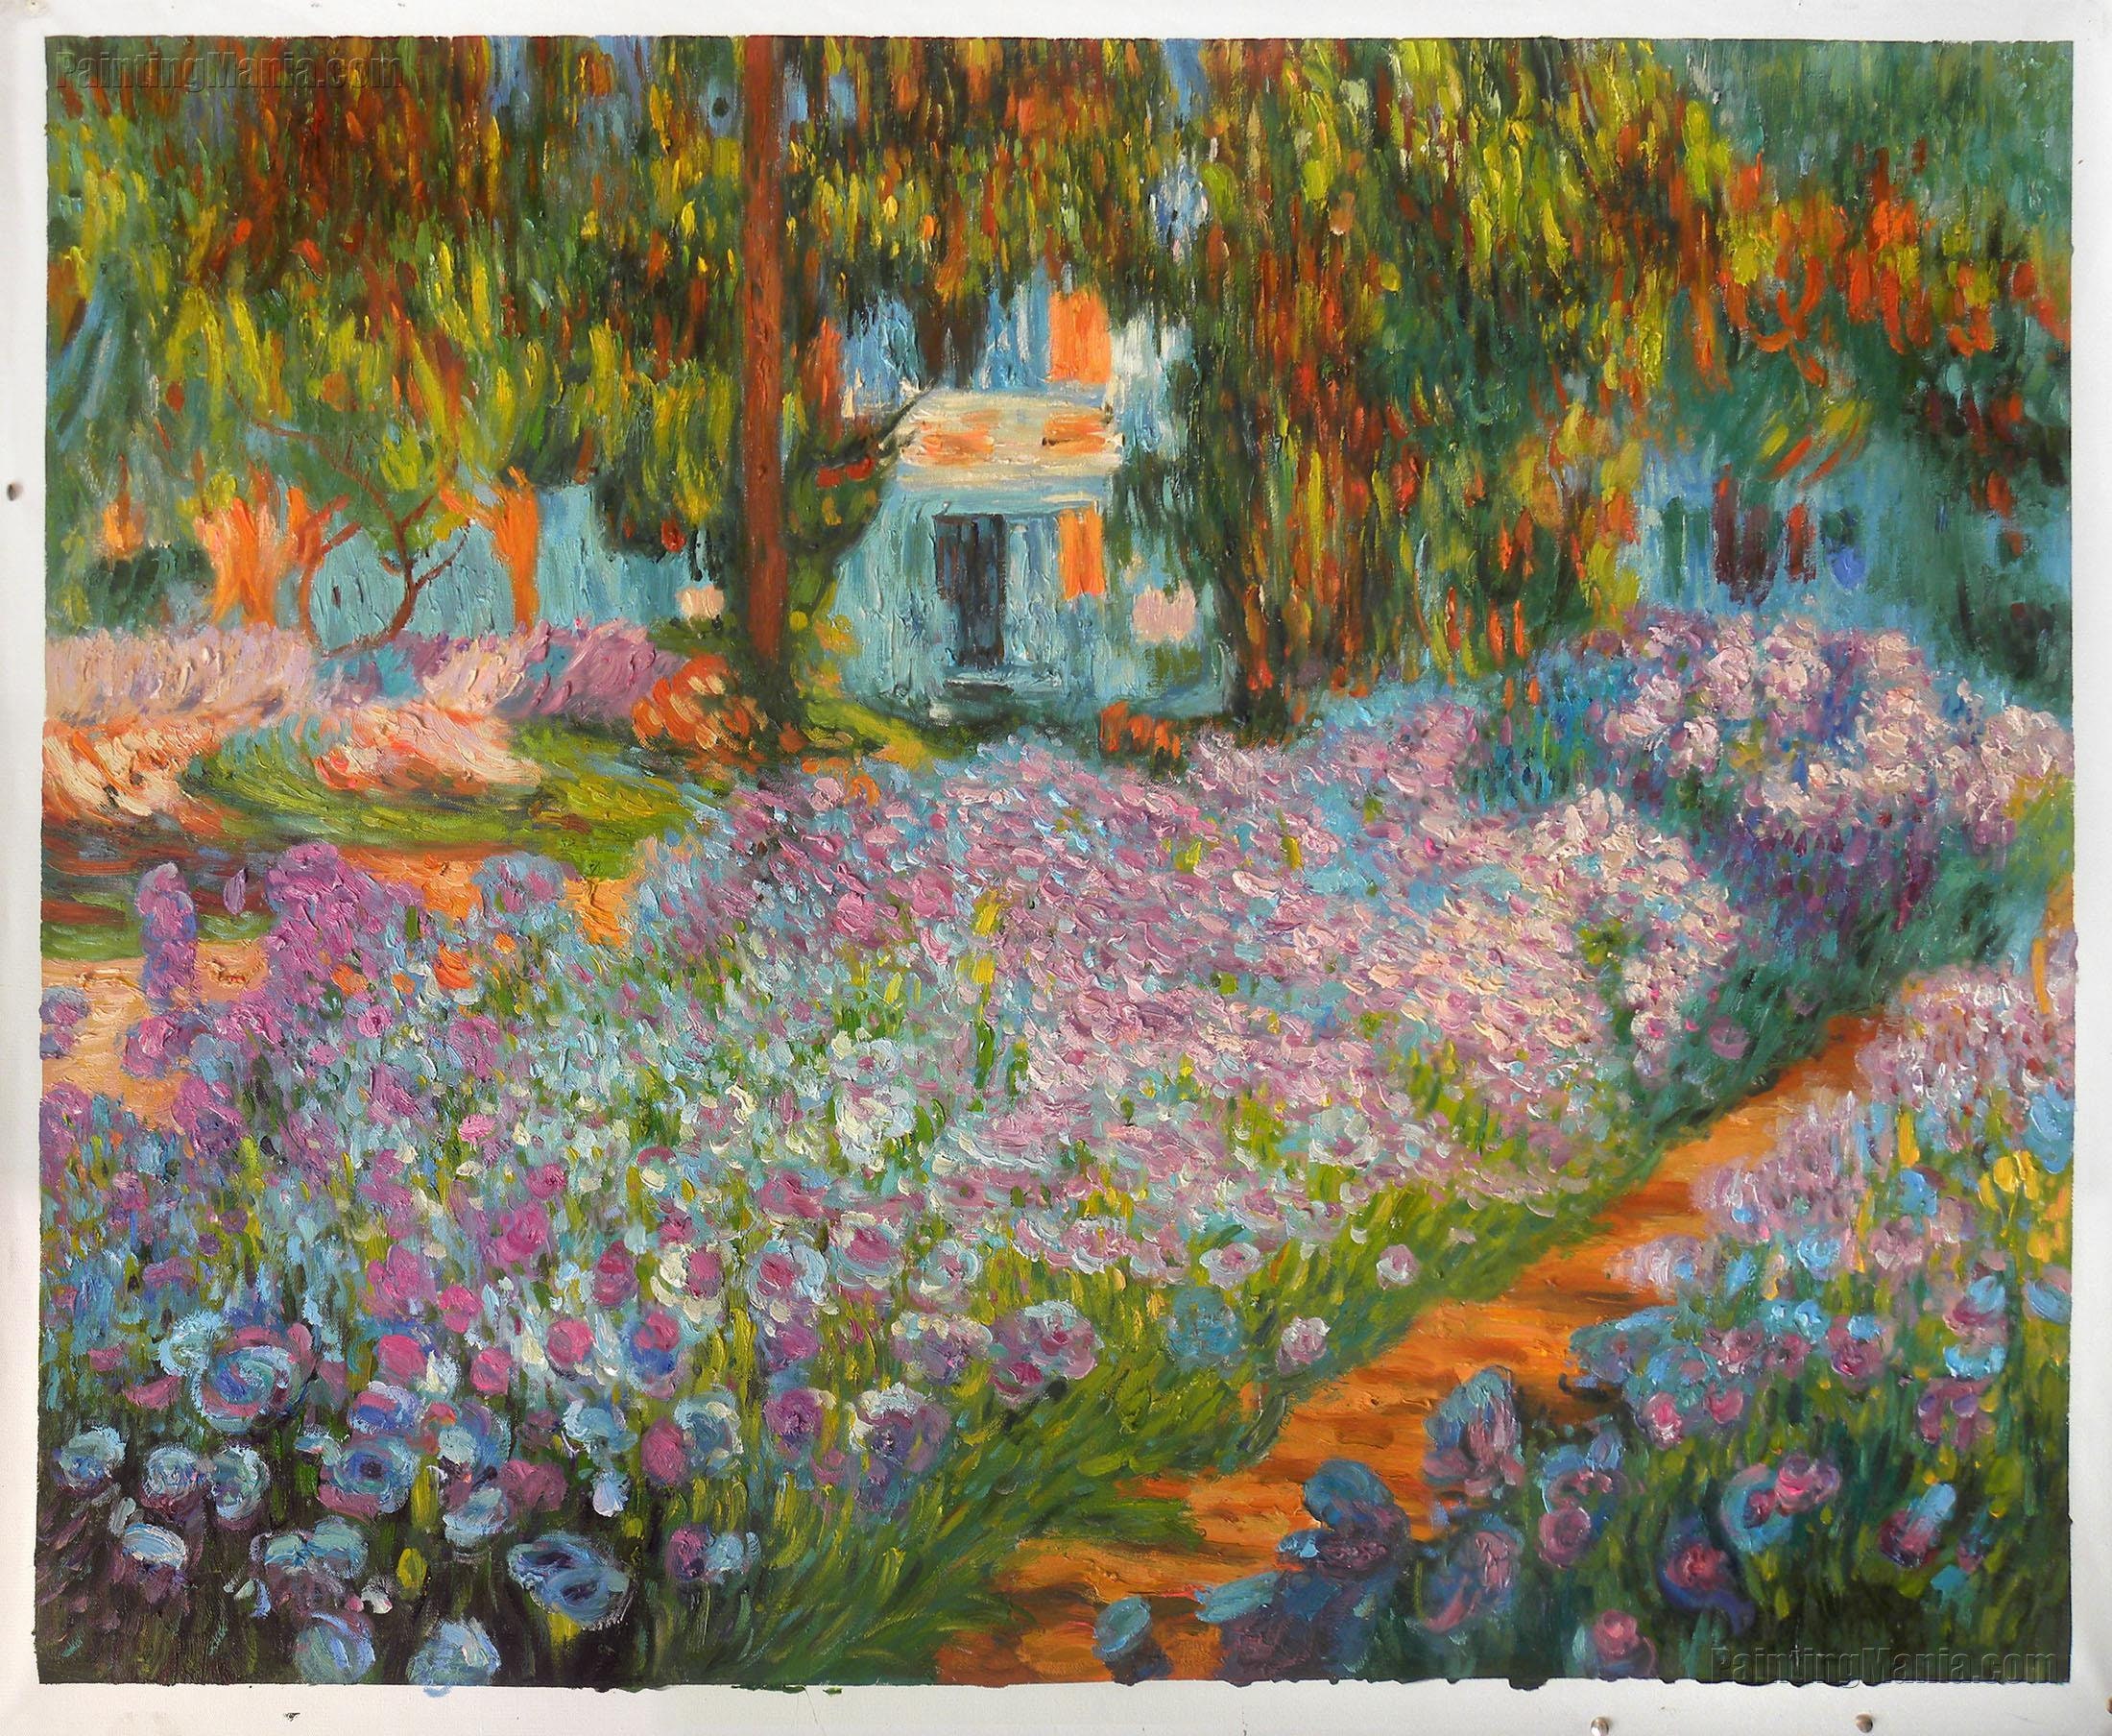 Irises in Monet's Garden 1900 Claude Monet hand-painted | Etsy